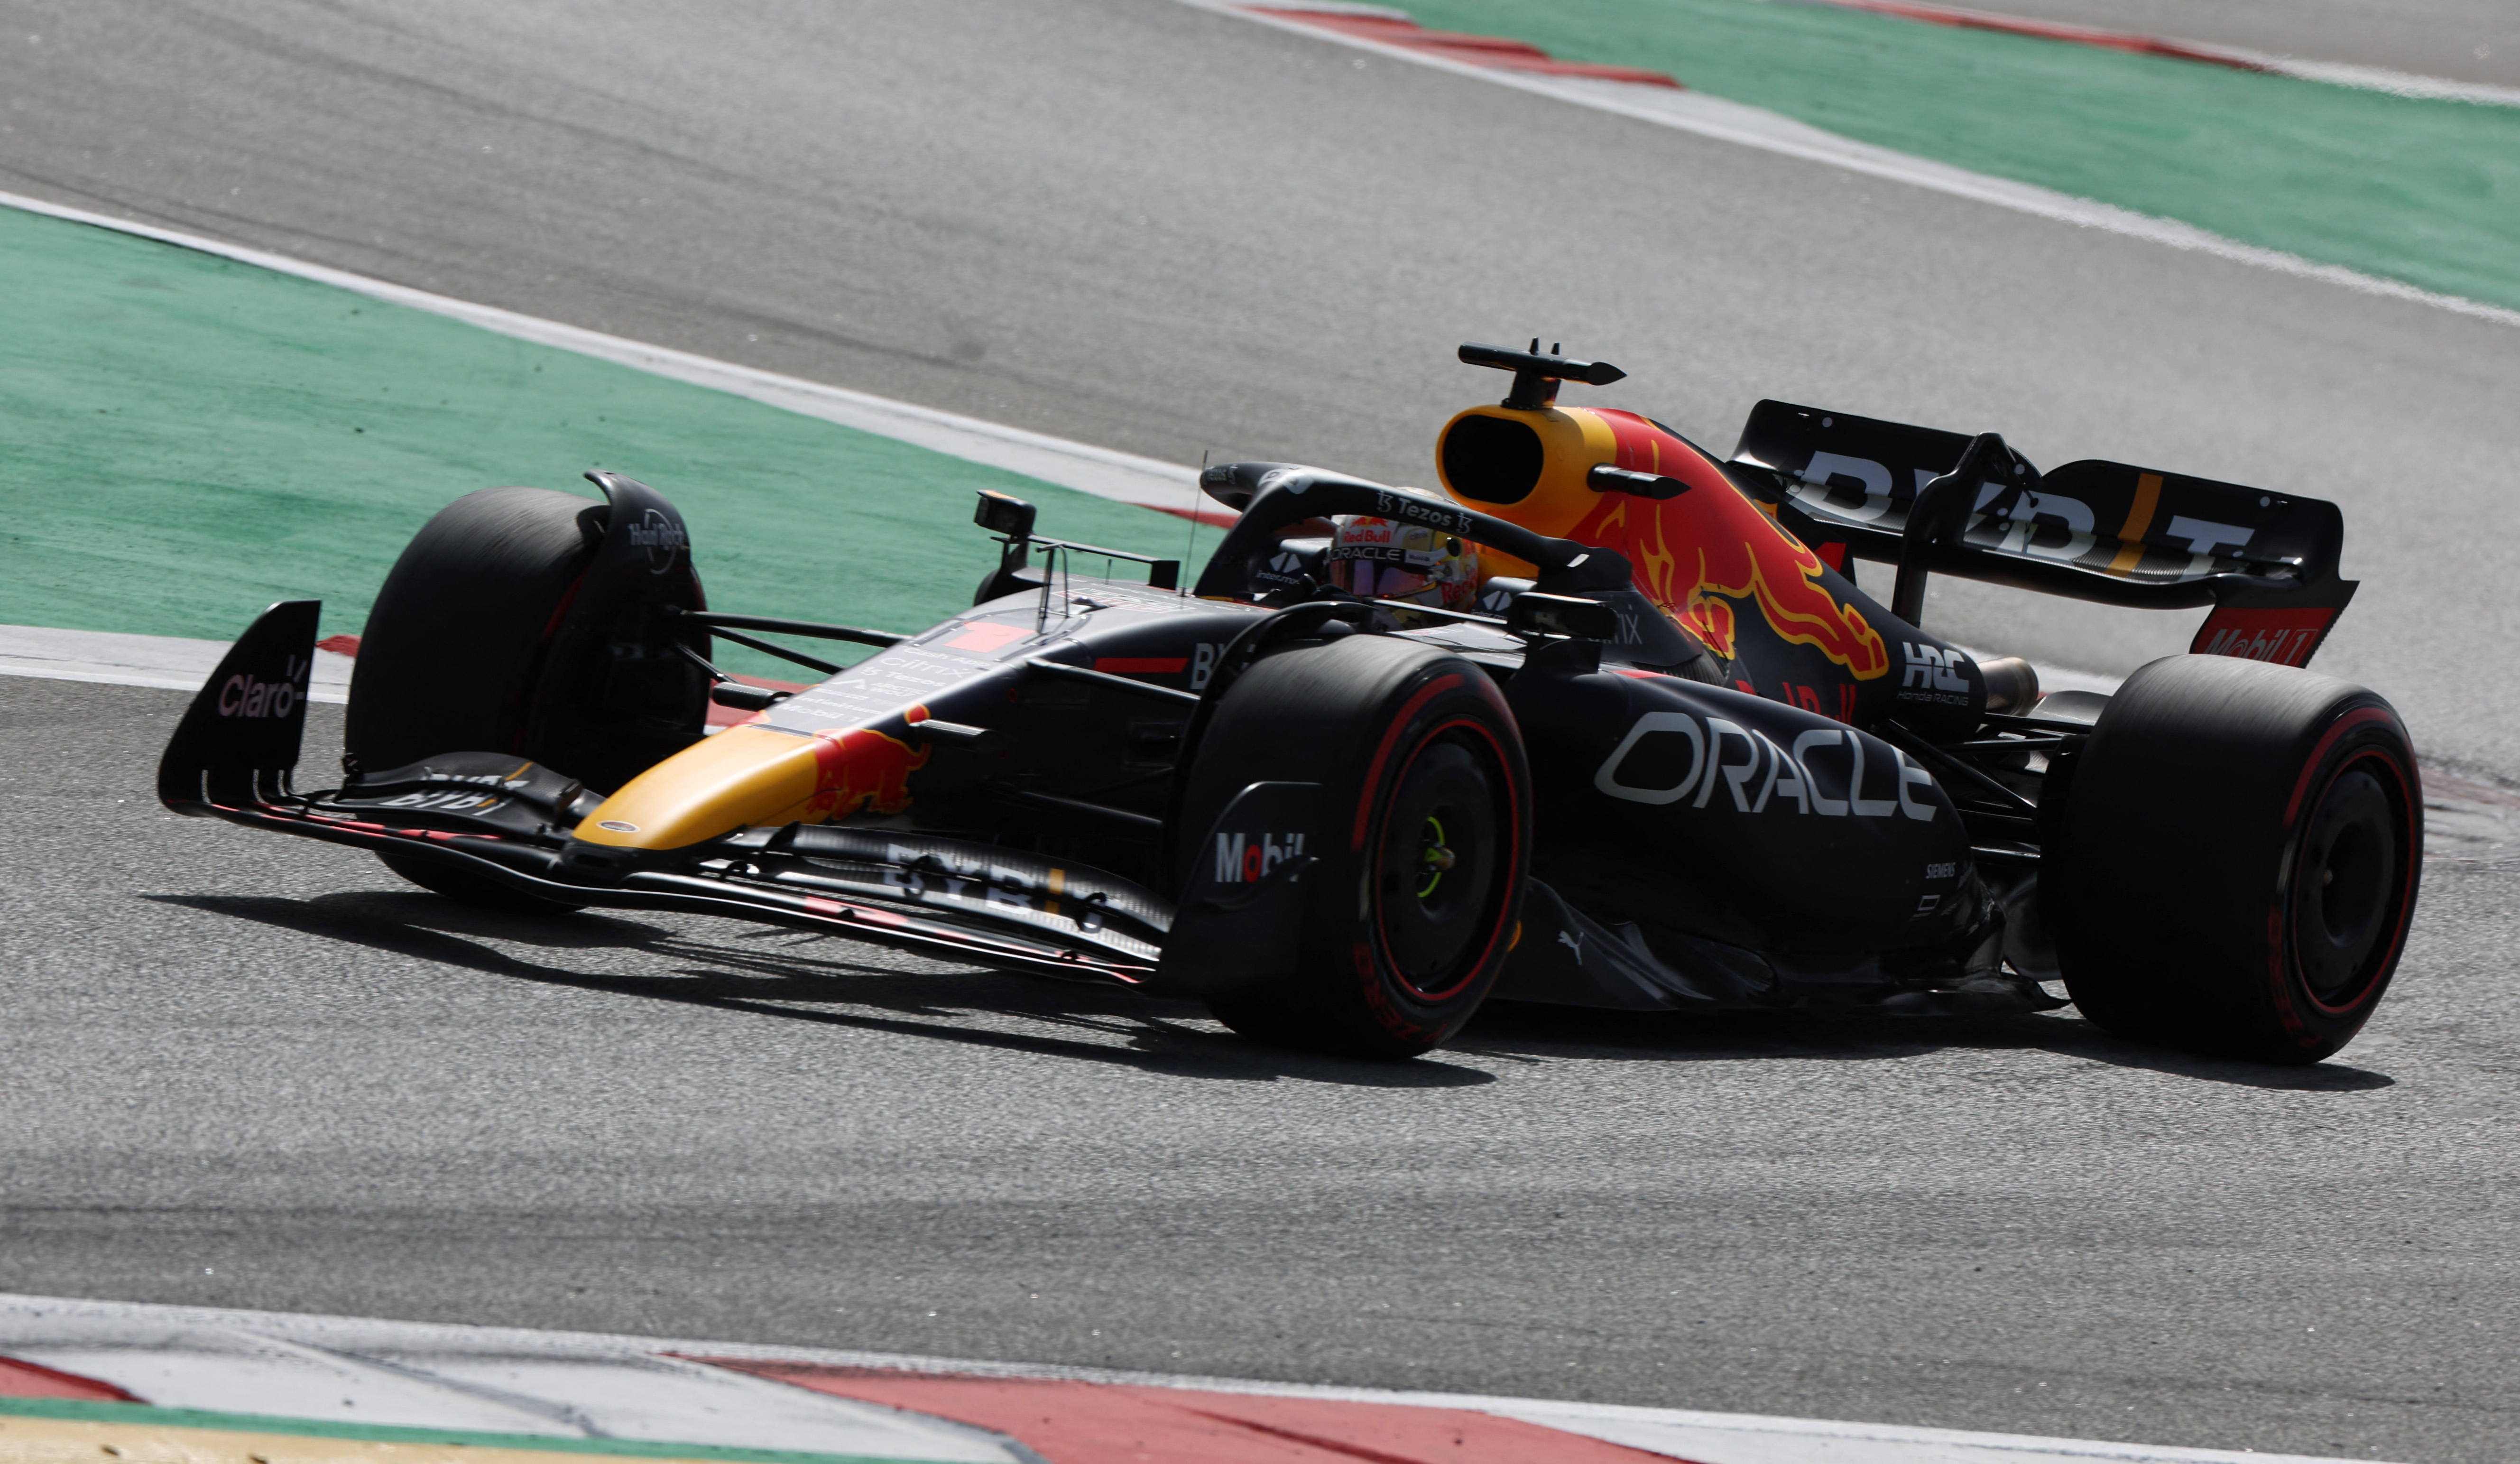 La Red Bull di Verstappen si è qualificata in seconda posizione per il Gran Premio di Spagna (REUTERS / Nacho Doce)